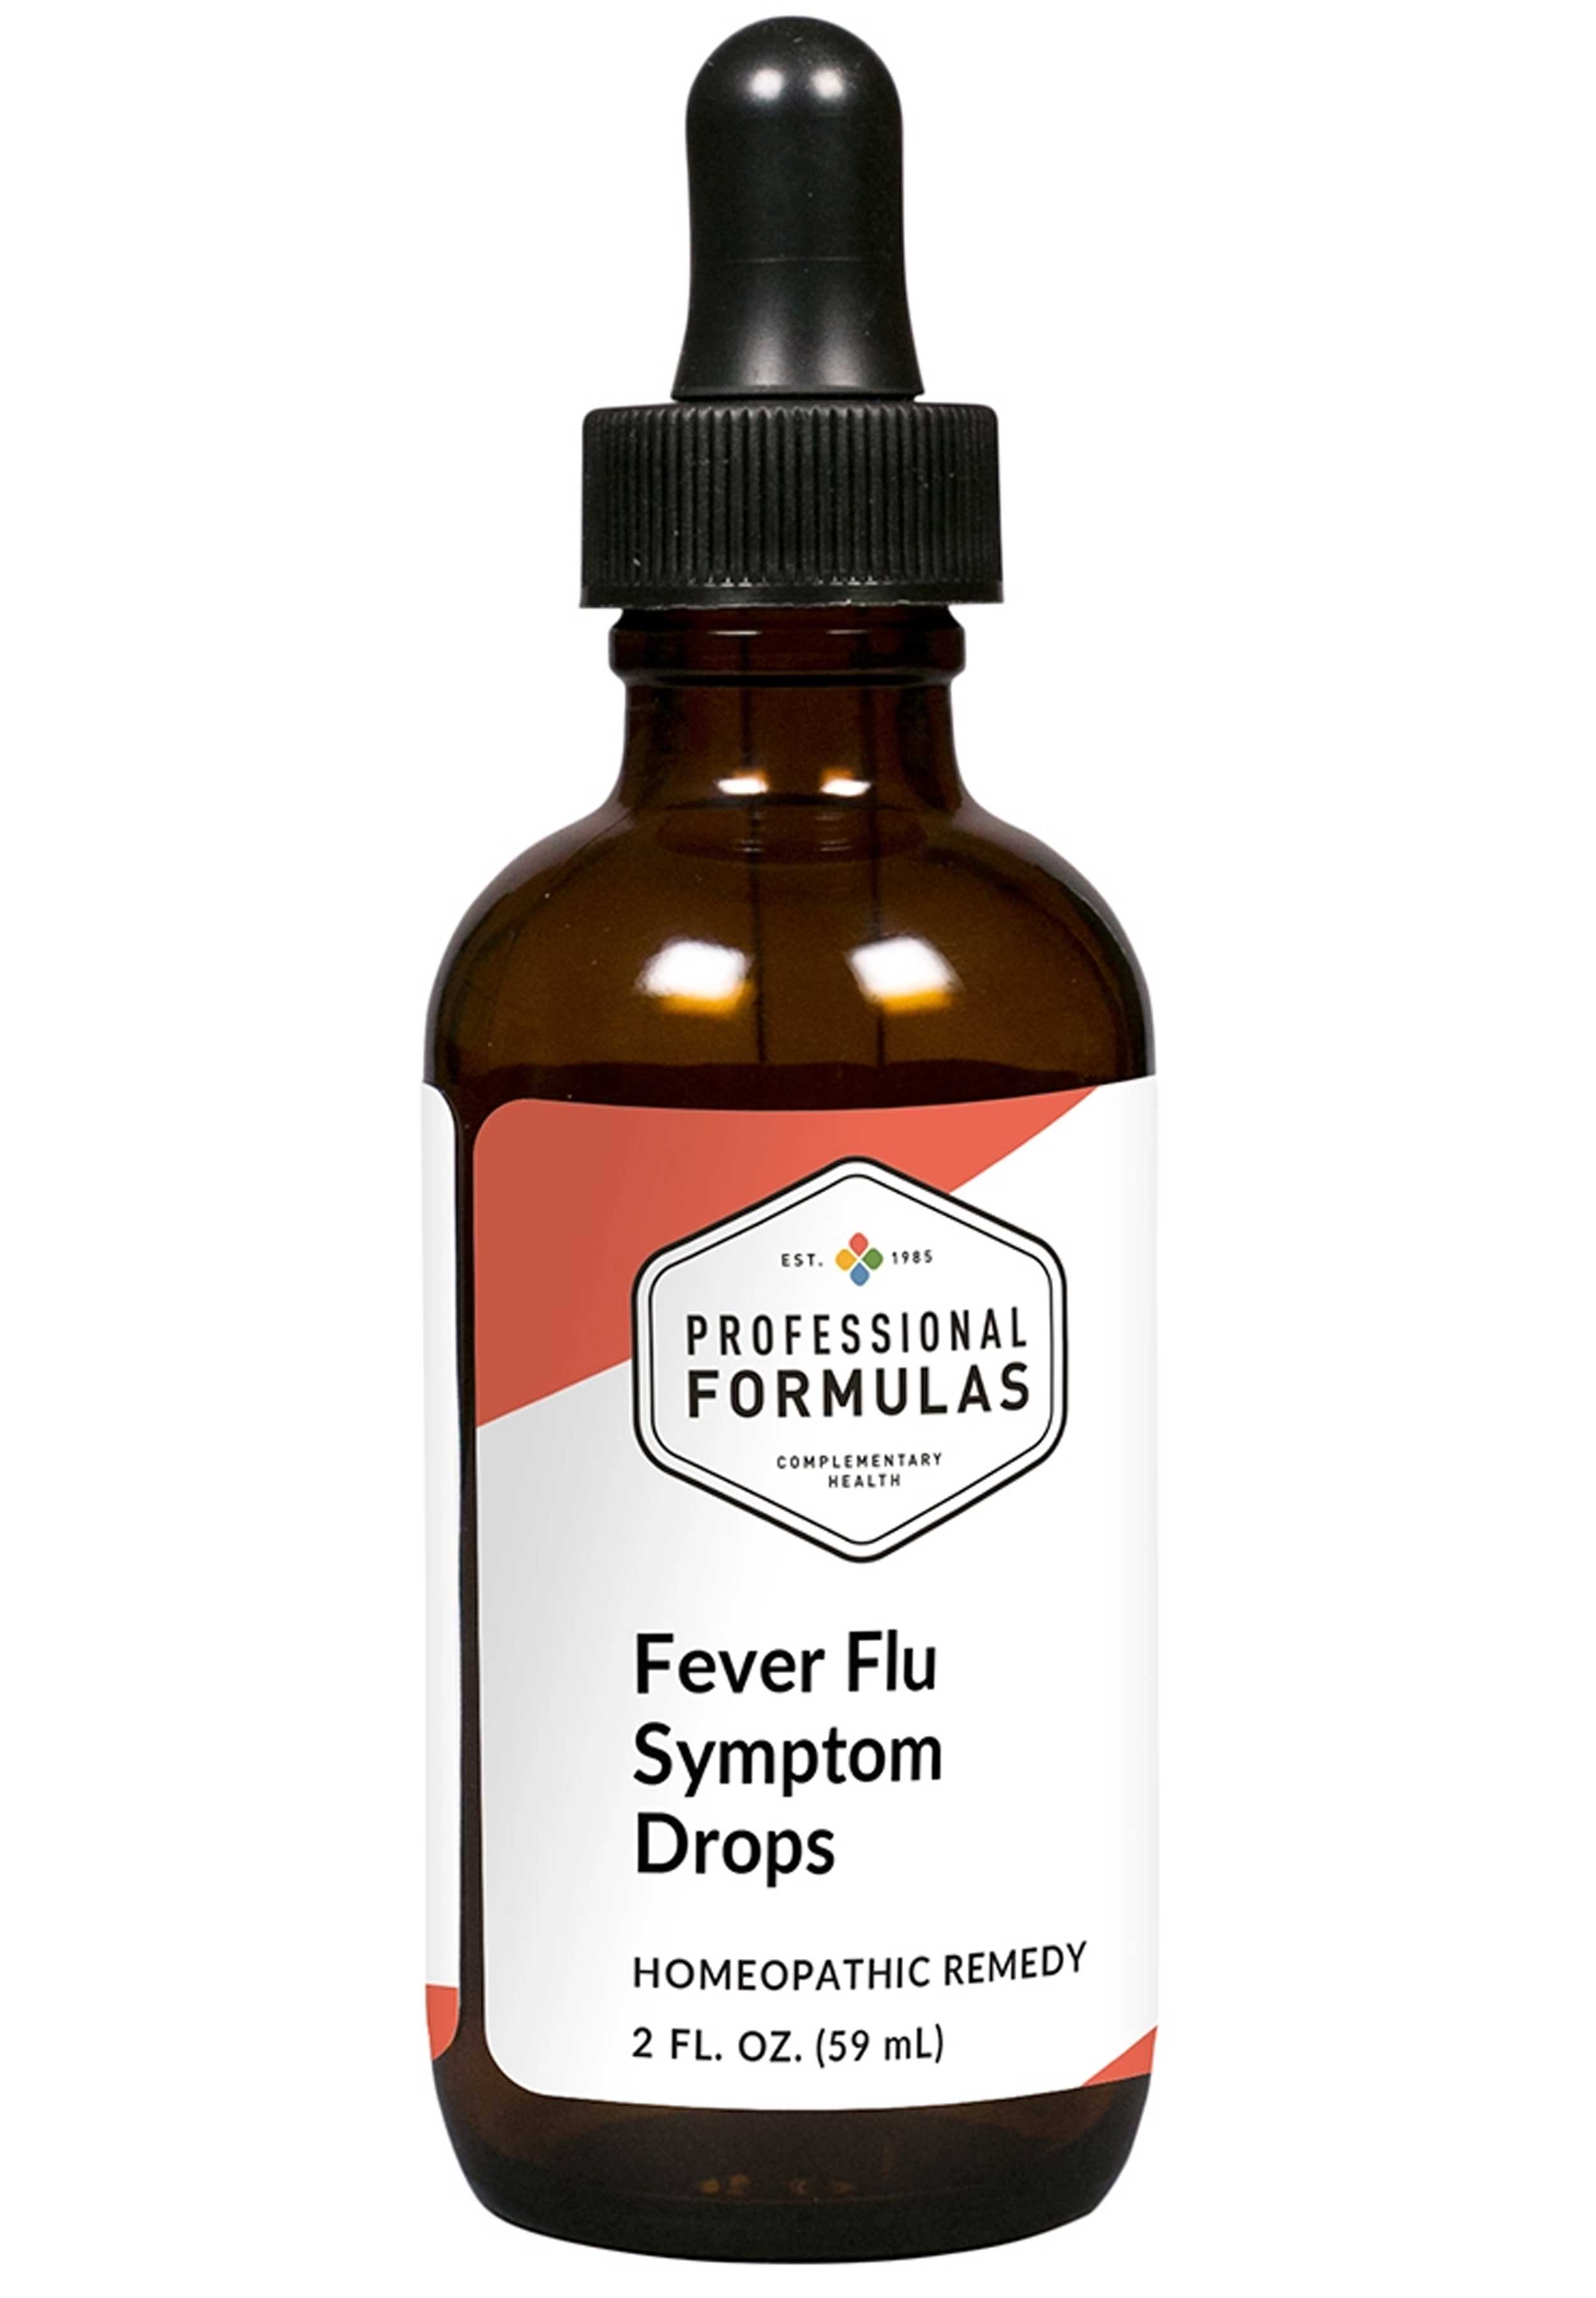 Professional Formulas Fever Flu Symptom Drops